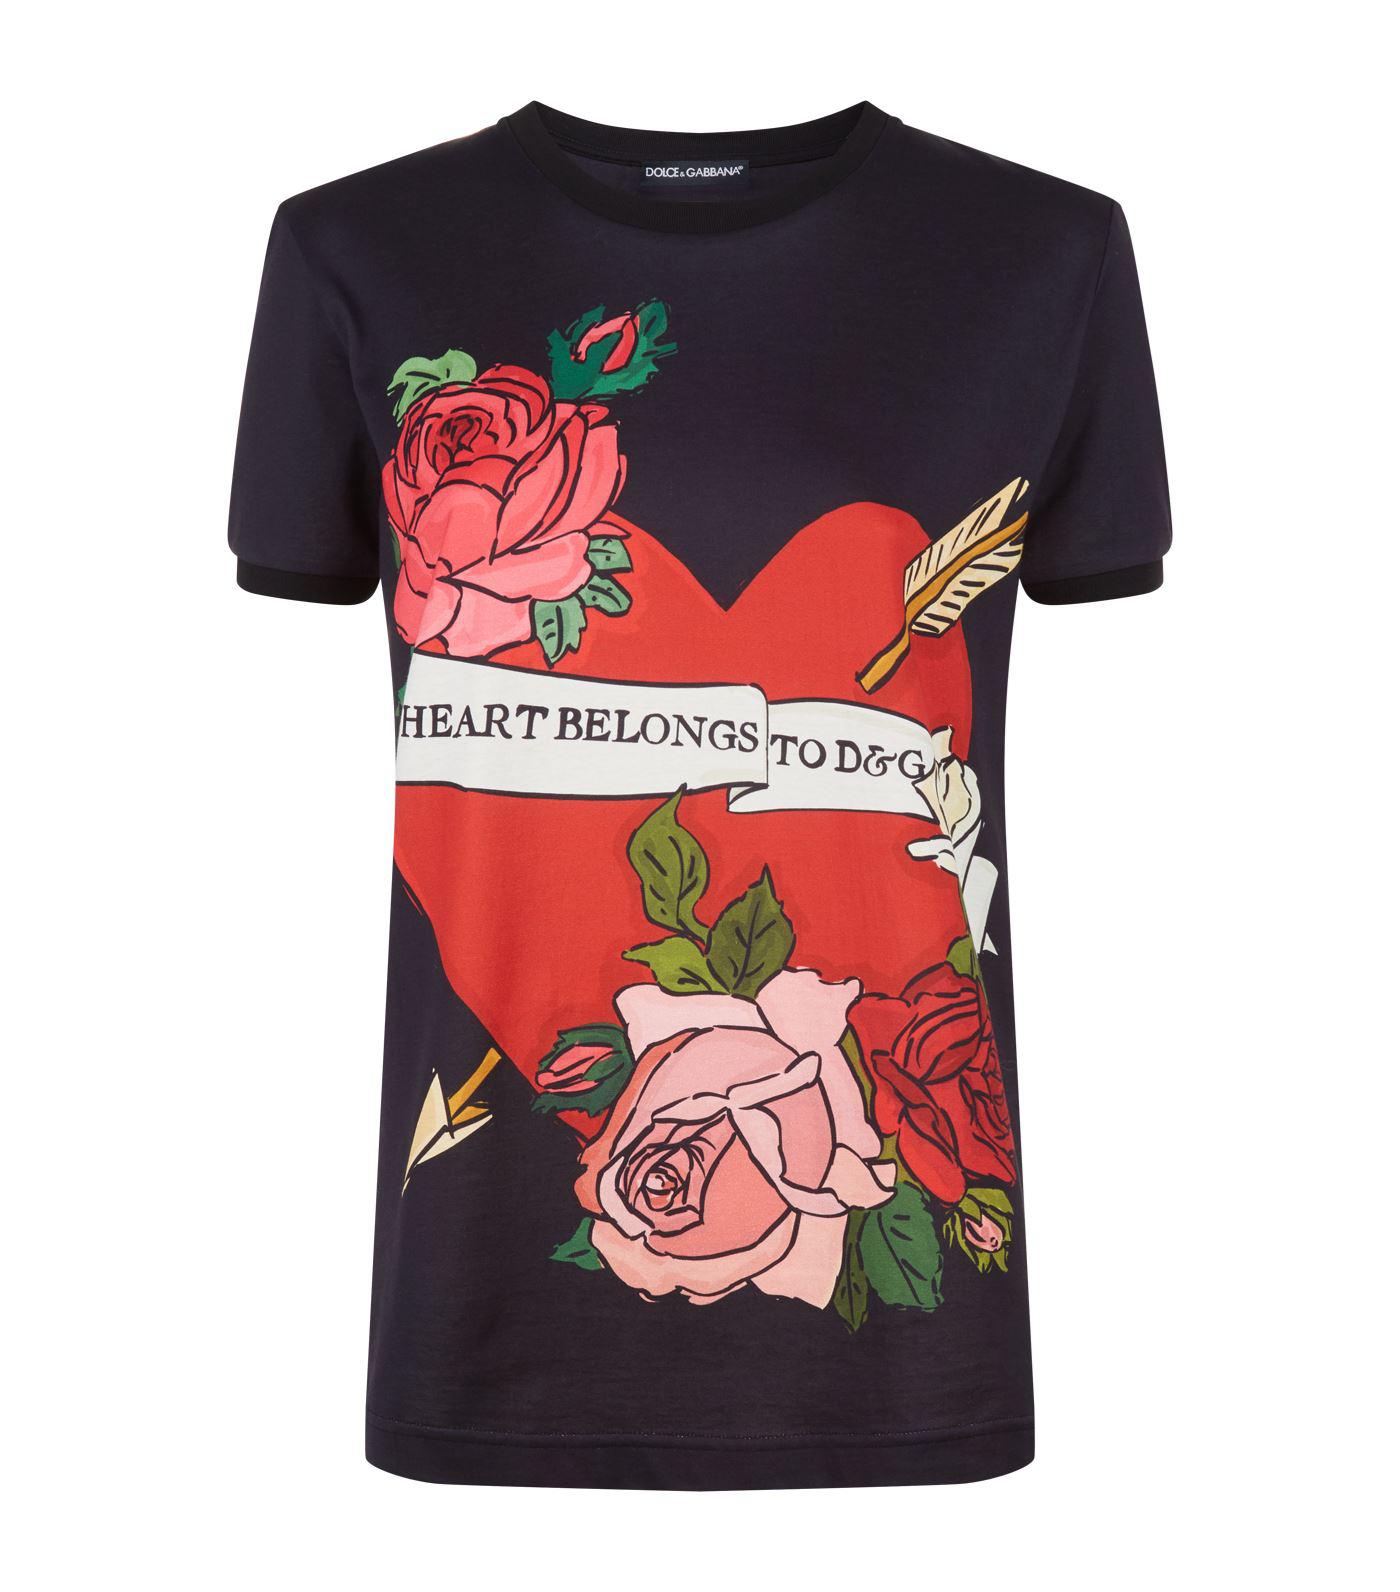 fumle evne cricket Dolce & Gabbana Cotton My Heart Belongs To D & G T-shirt - Lyst